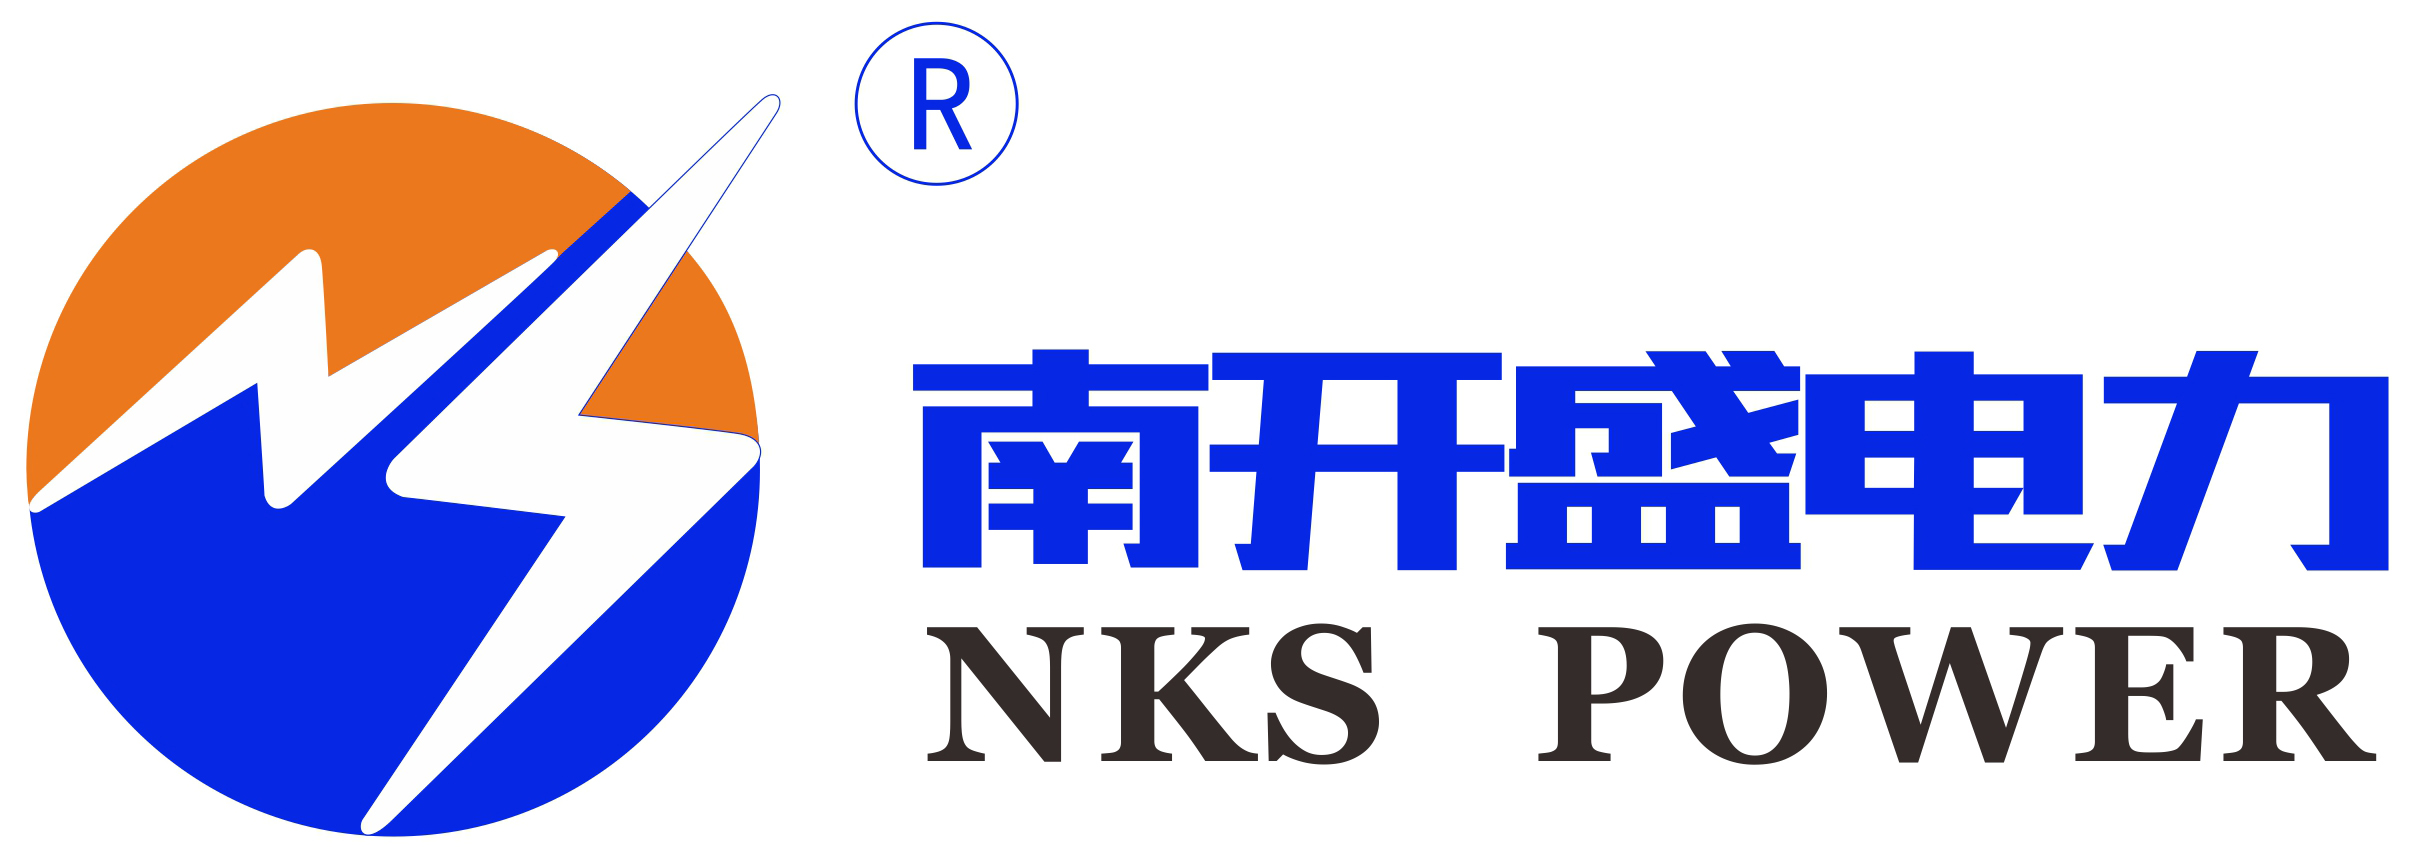 เซินเจิ้น Nan Kai Sheng Power Technology Co., LTD.